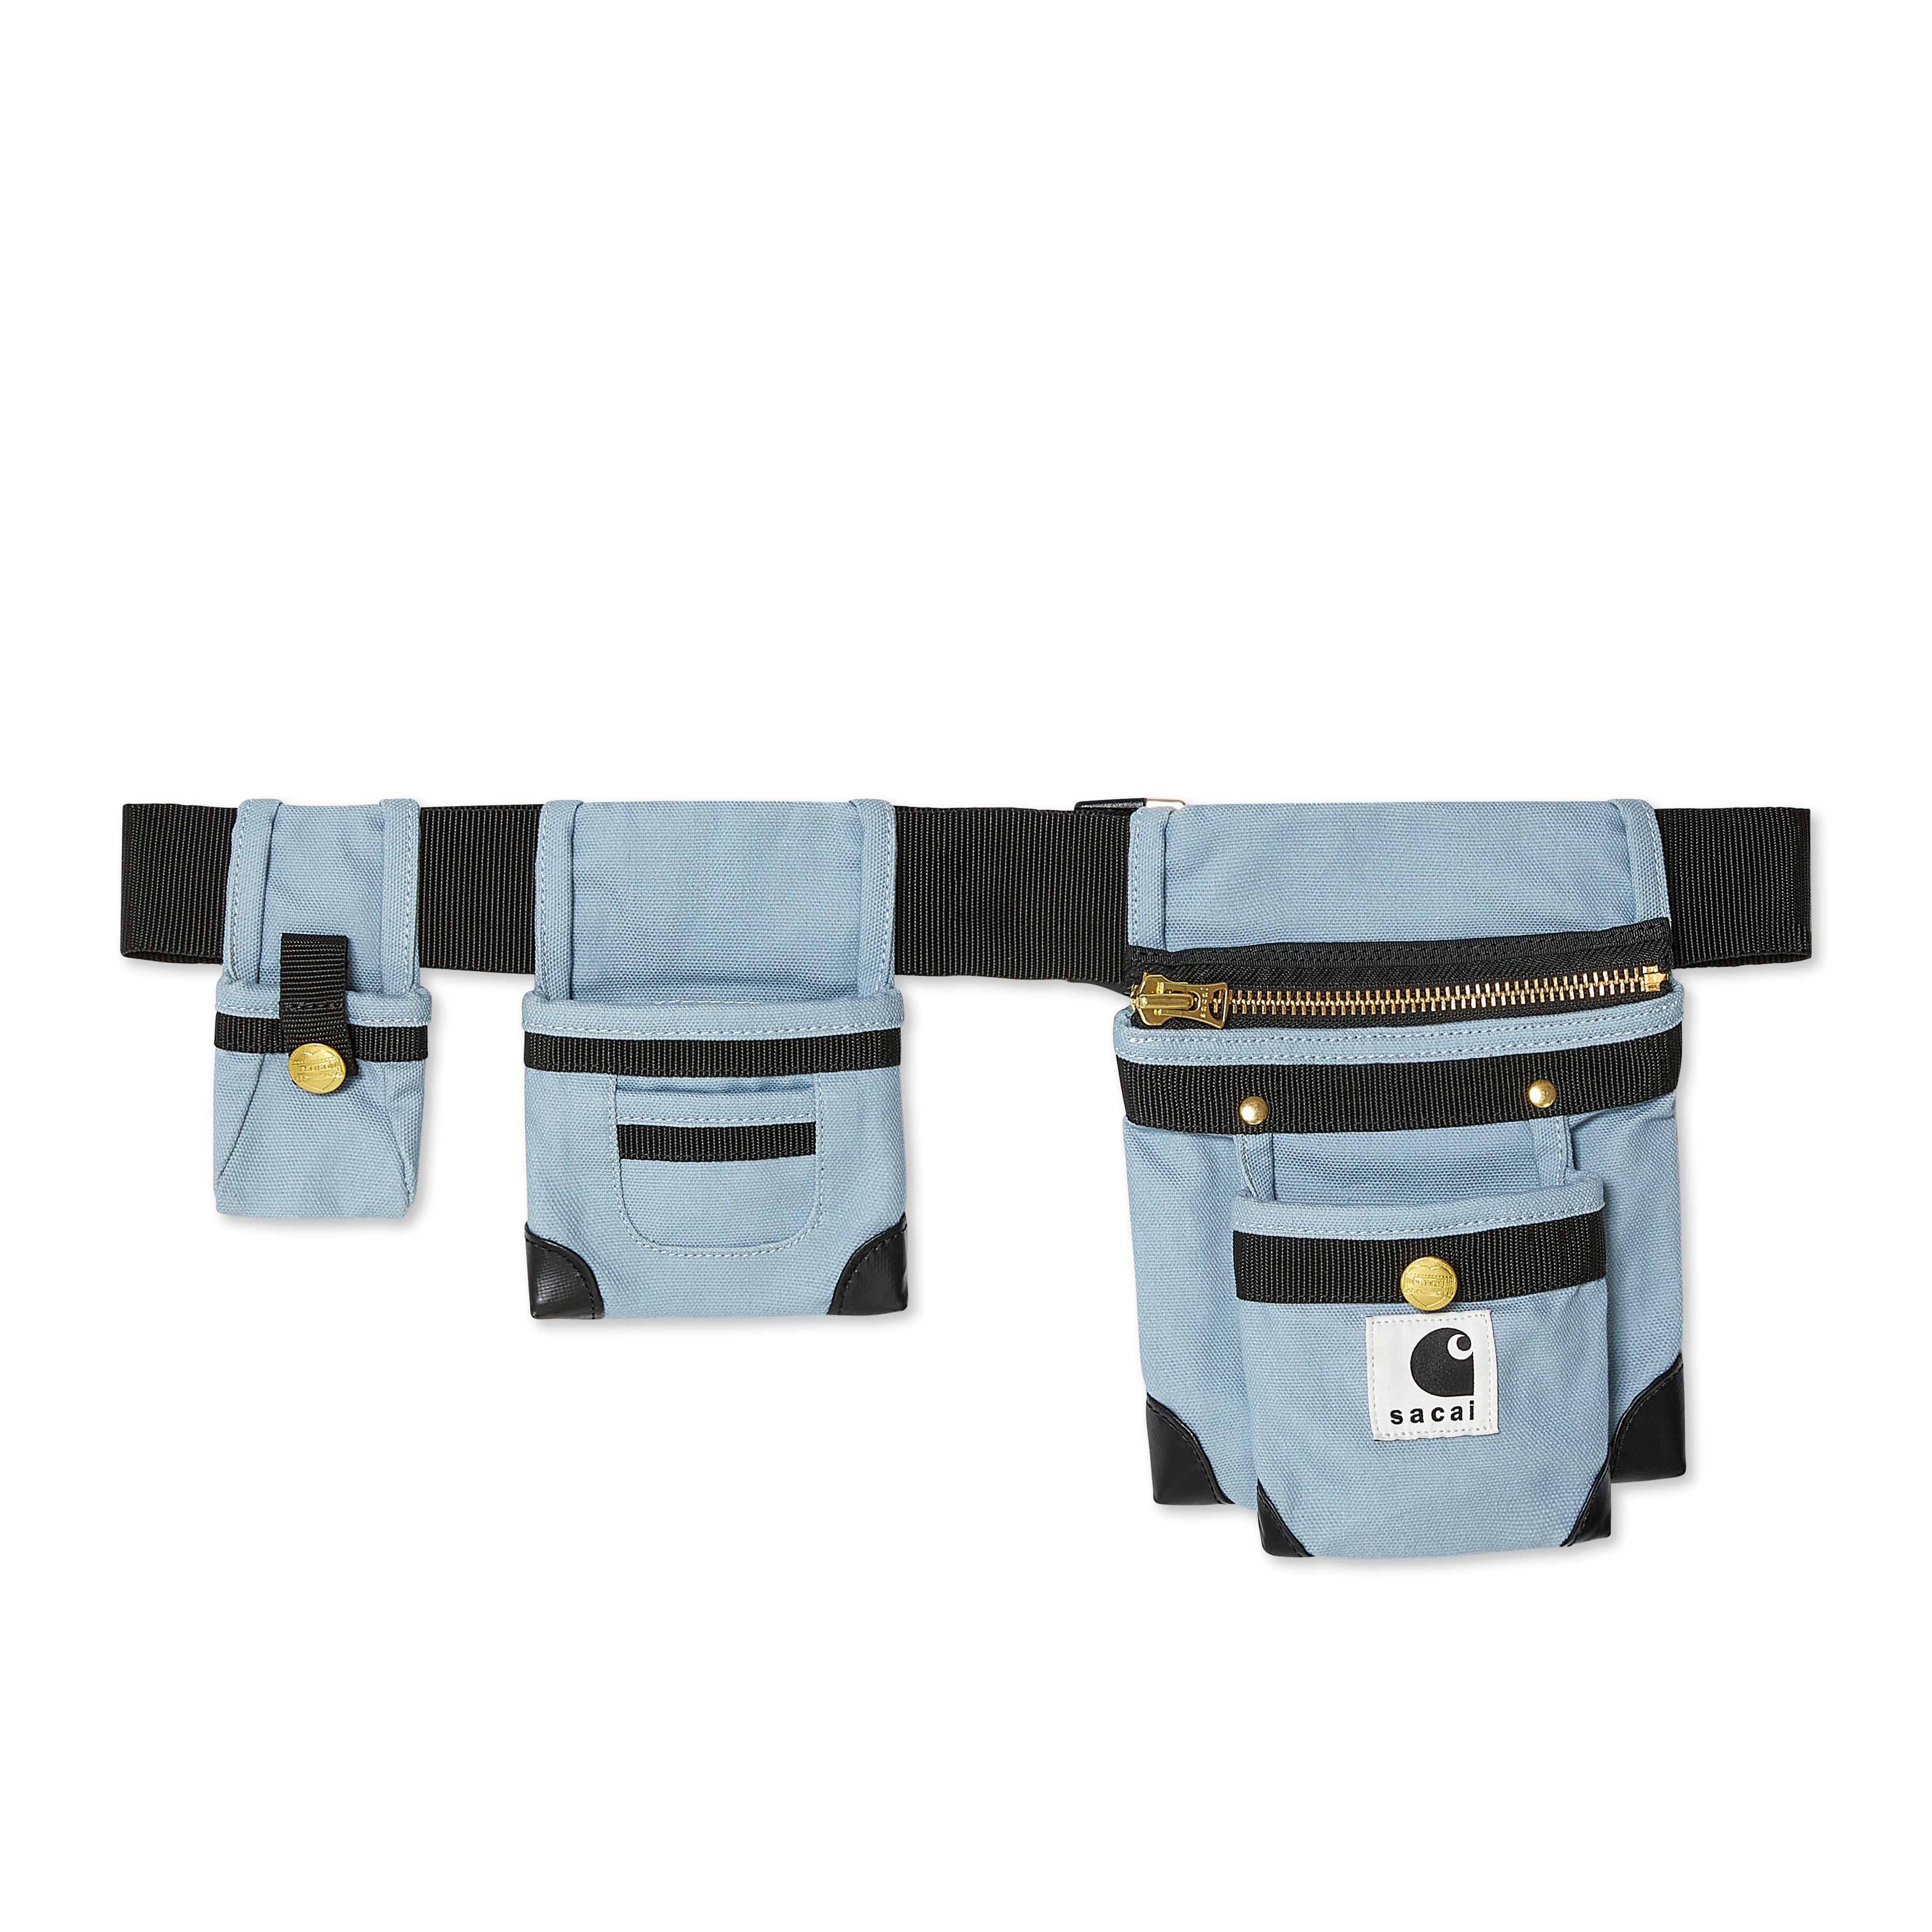 sacai - Carhartt WIP Pocket Bag - (Light Blue) | Dover Street 